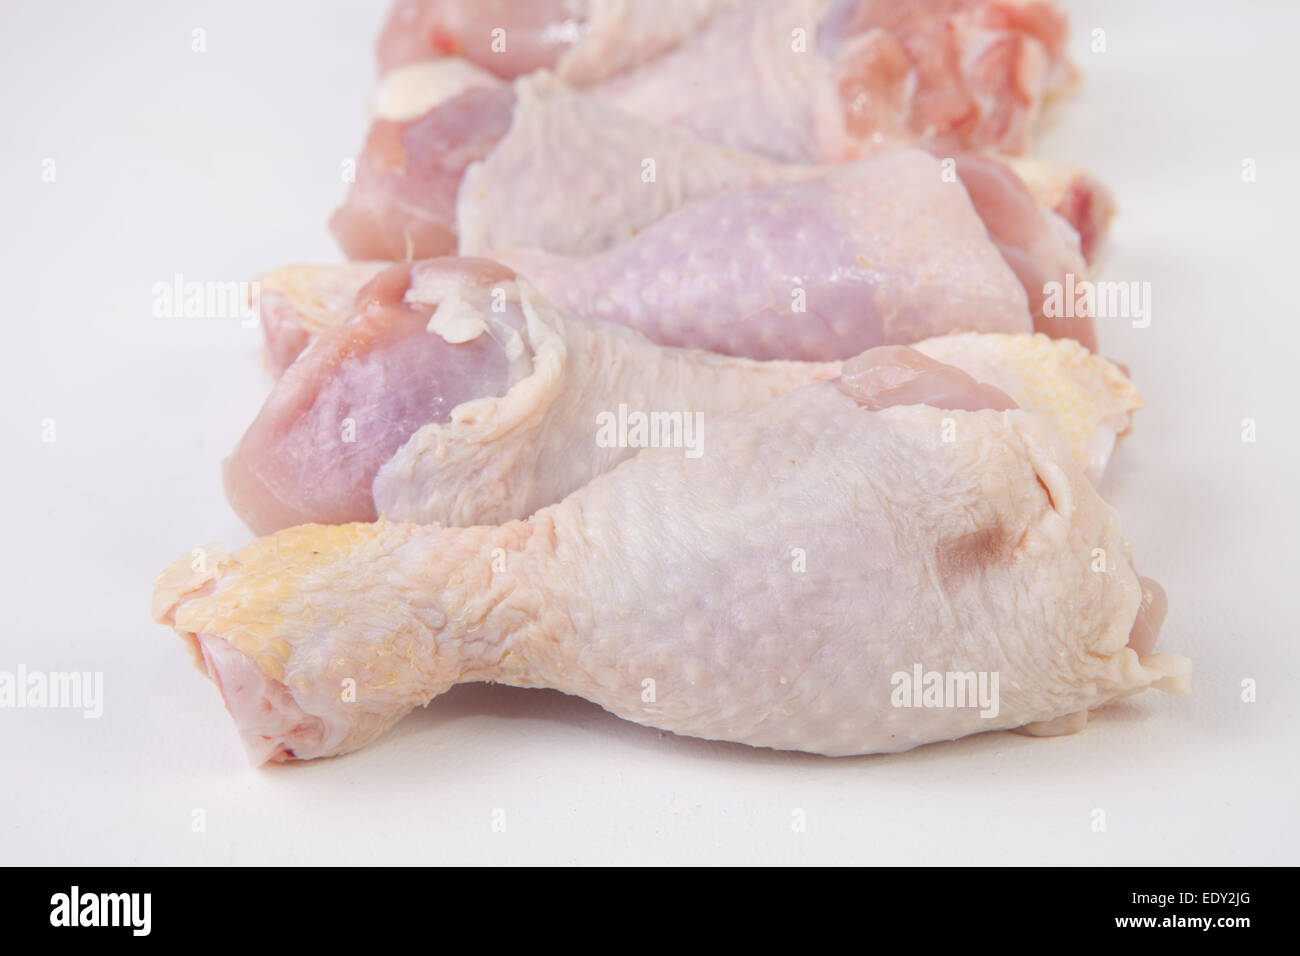 Haut de cuisses de poulet ou des jambes isolé sur fond blanc Banque D'Images